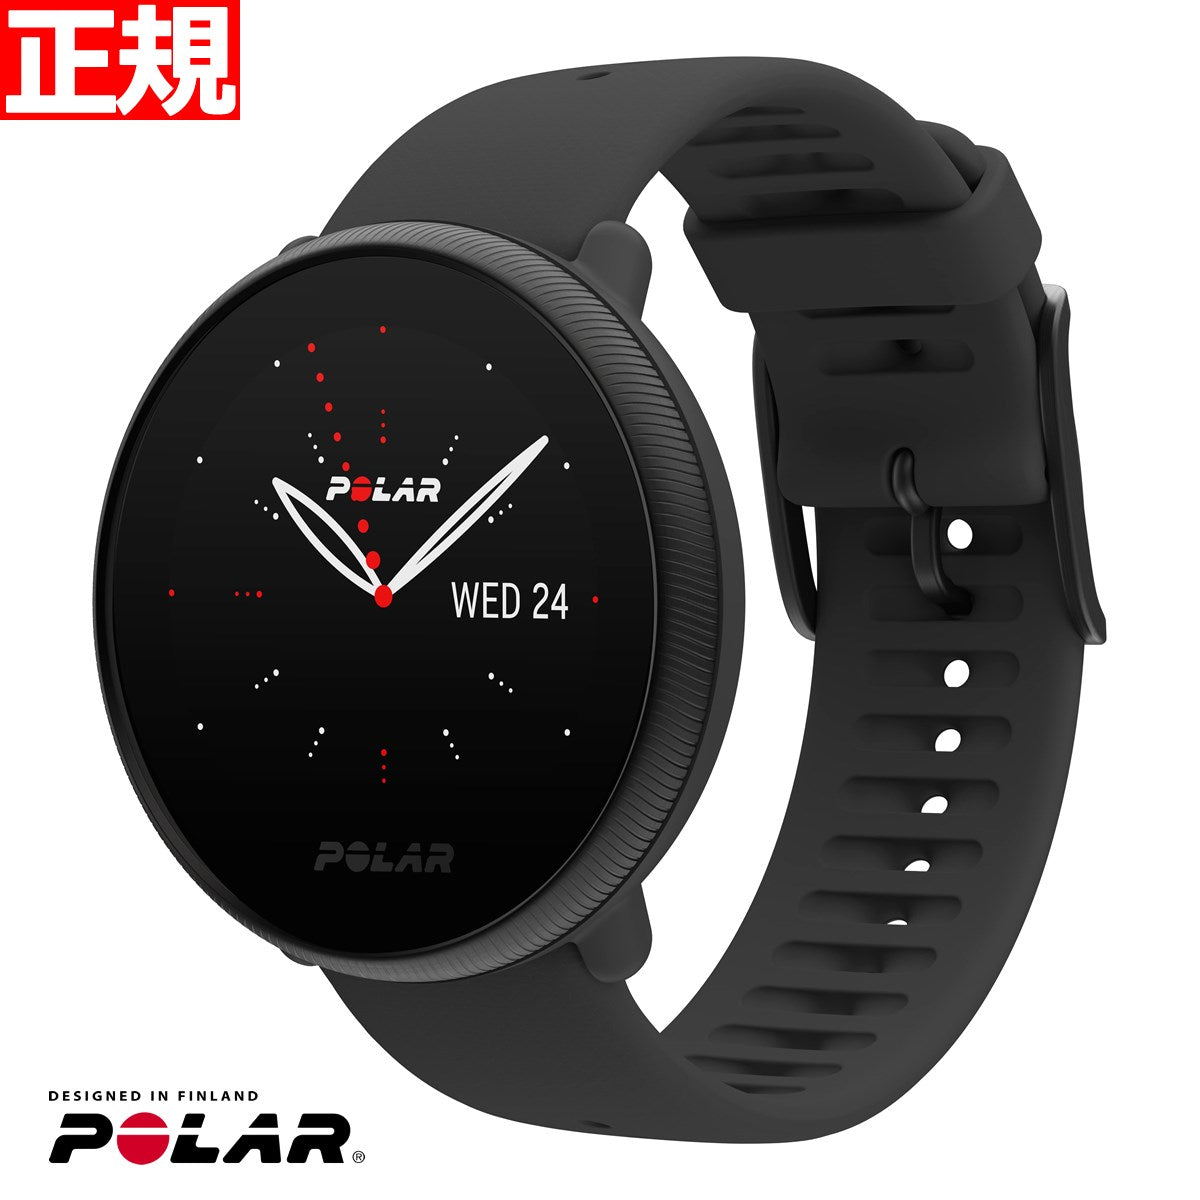 POLAR ポラール IGNITE2 イグナイト2 ブラックパール S-Lサイズ 90085182 腕時計 GPS フィットネス スマートウォッチ ウェアラブル 心拍 活動量計 日本正規品